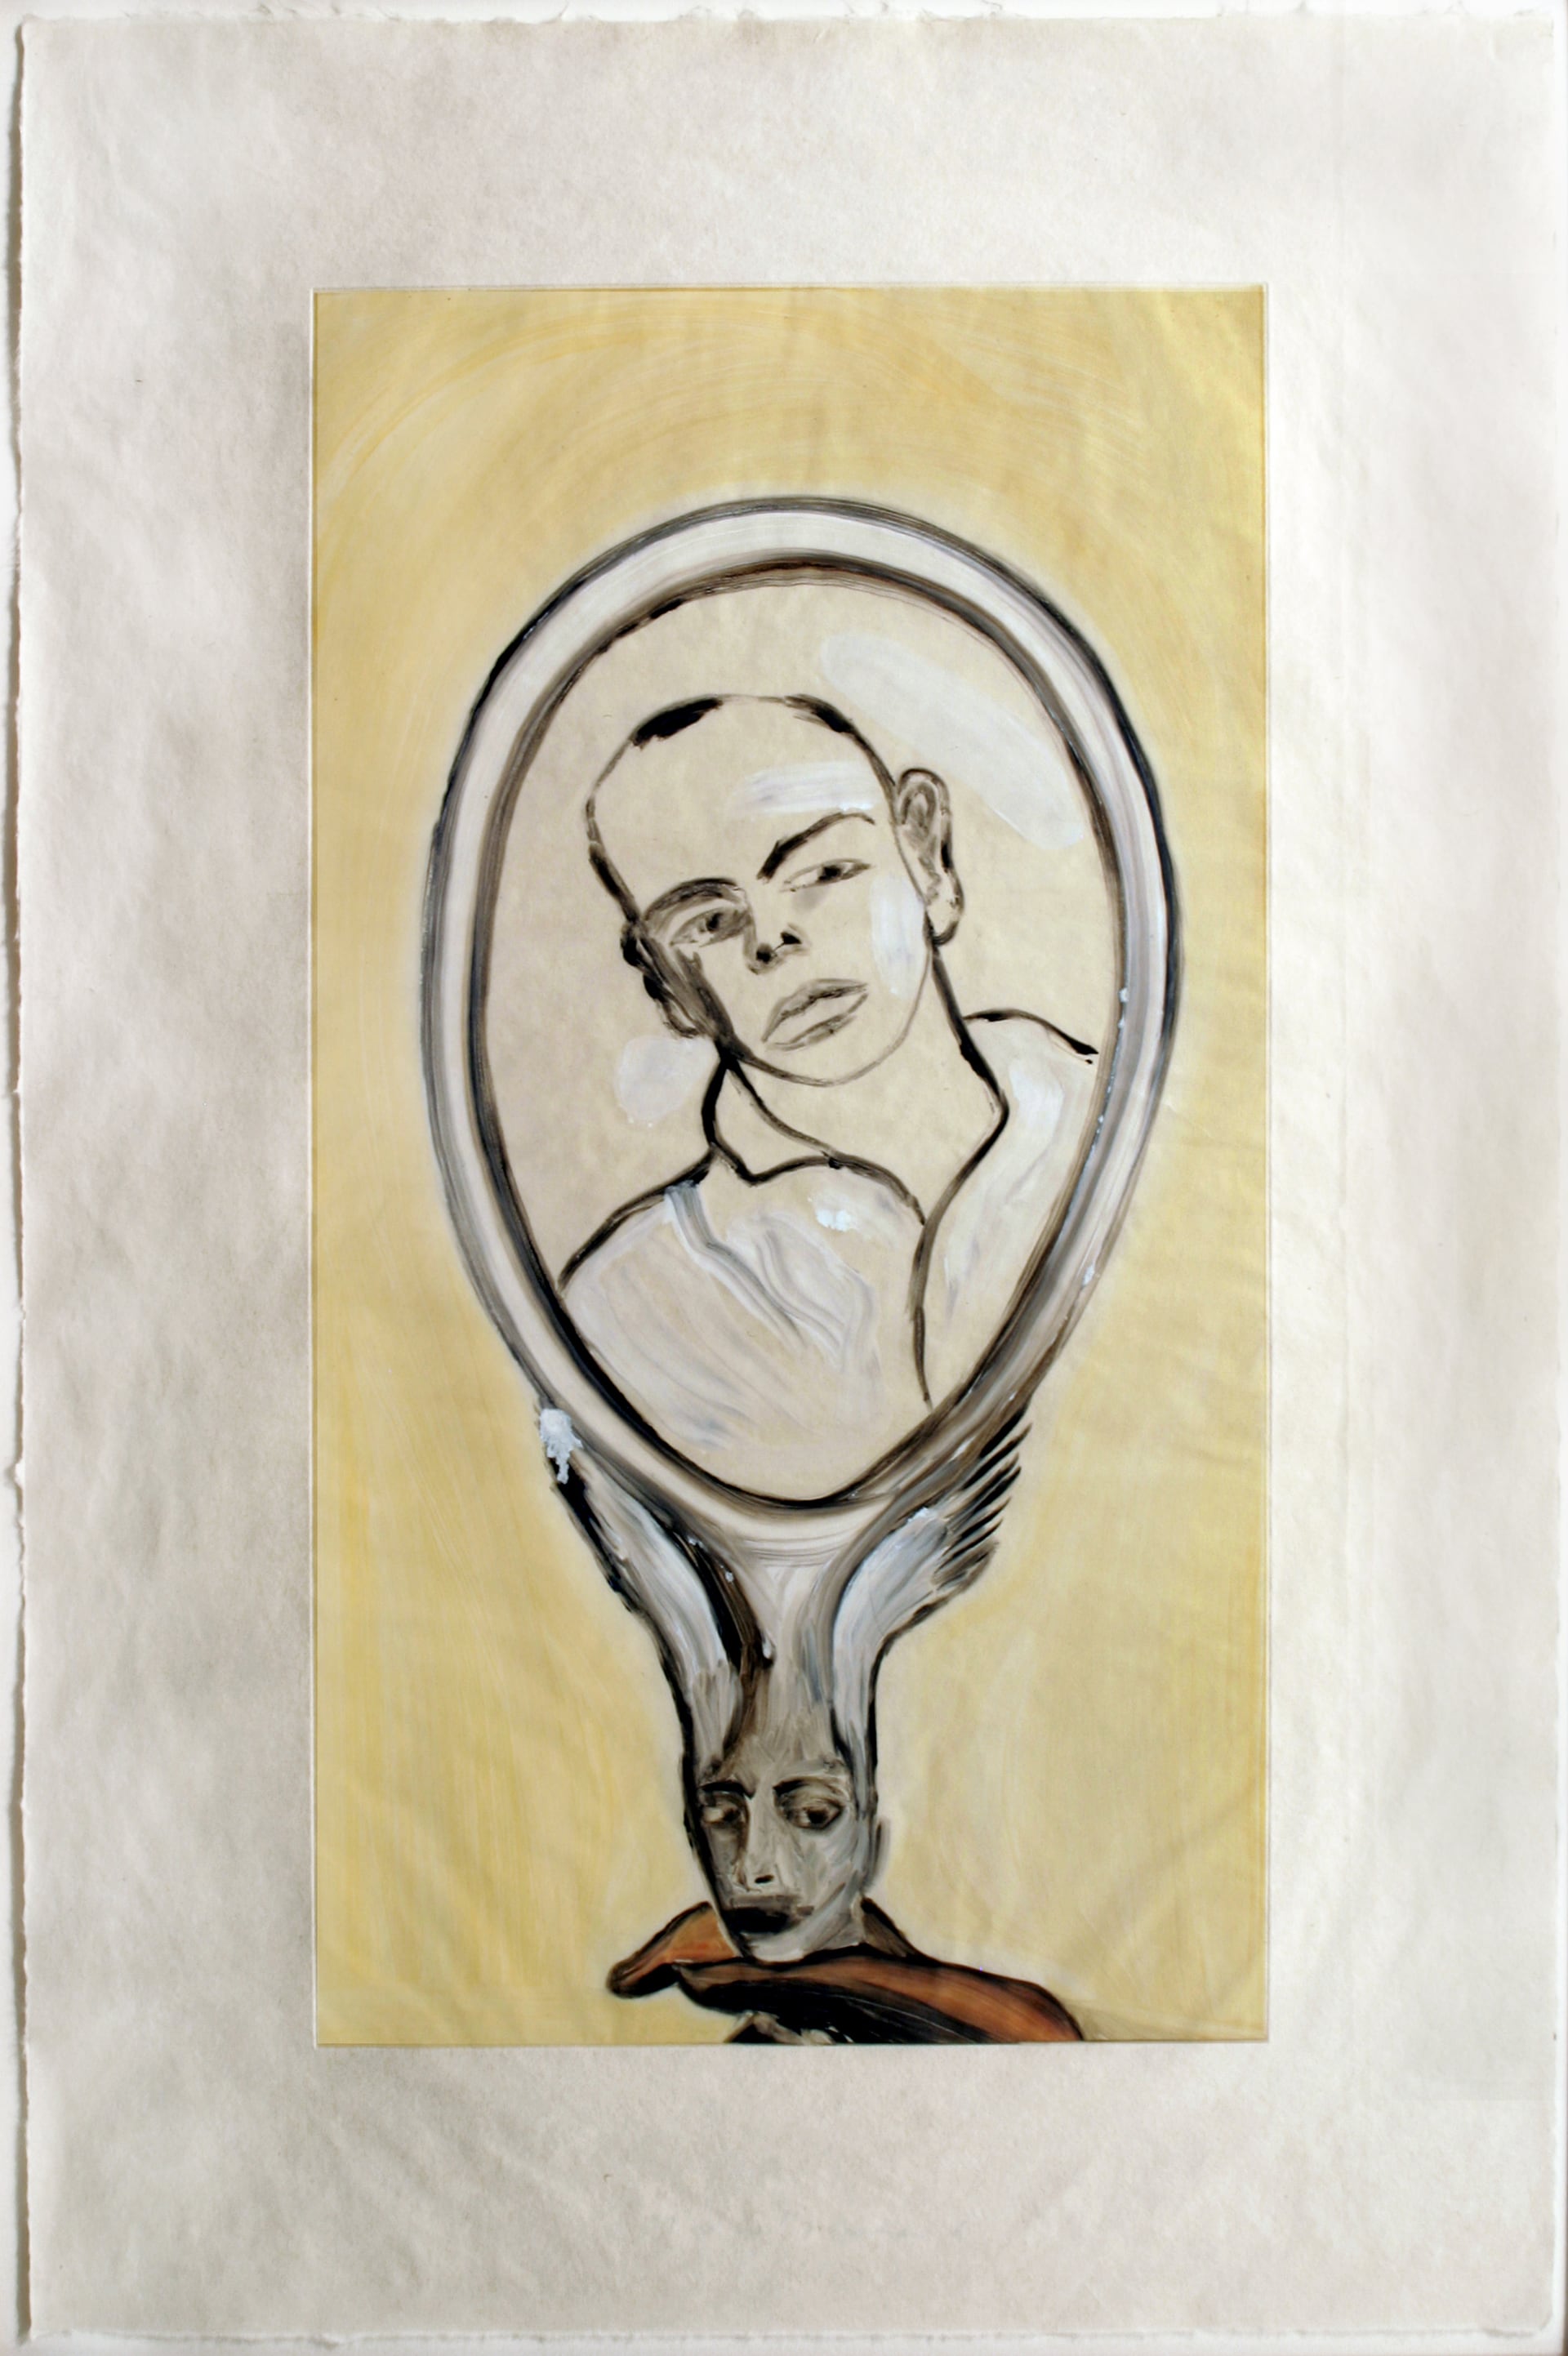 Francesco Clemente, Senza titolo (monotipo 70), 1986. Olio su carta litografica, 124 x 81 cm, Galleria in Arco, Torino